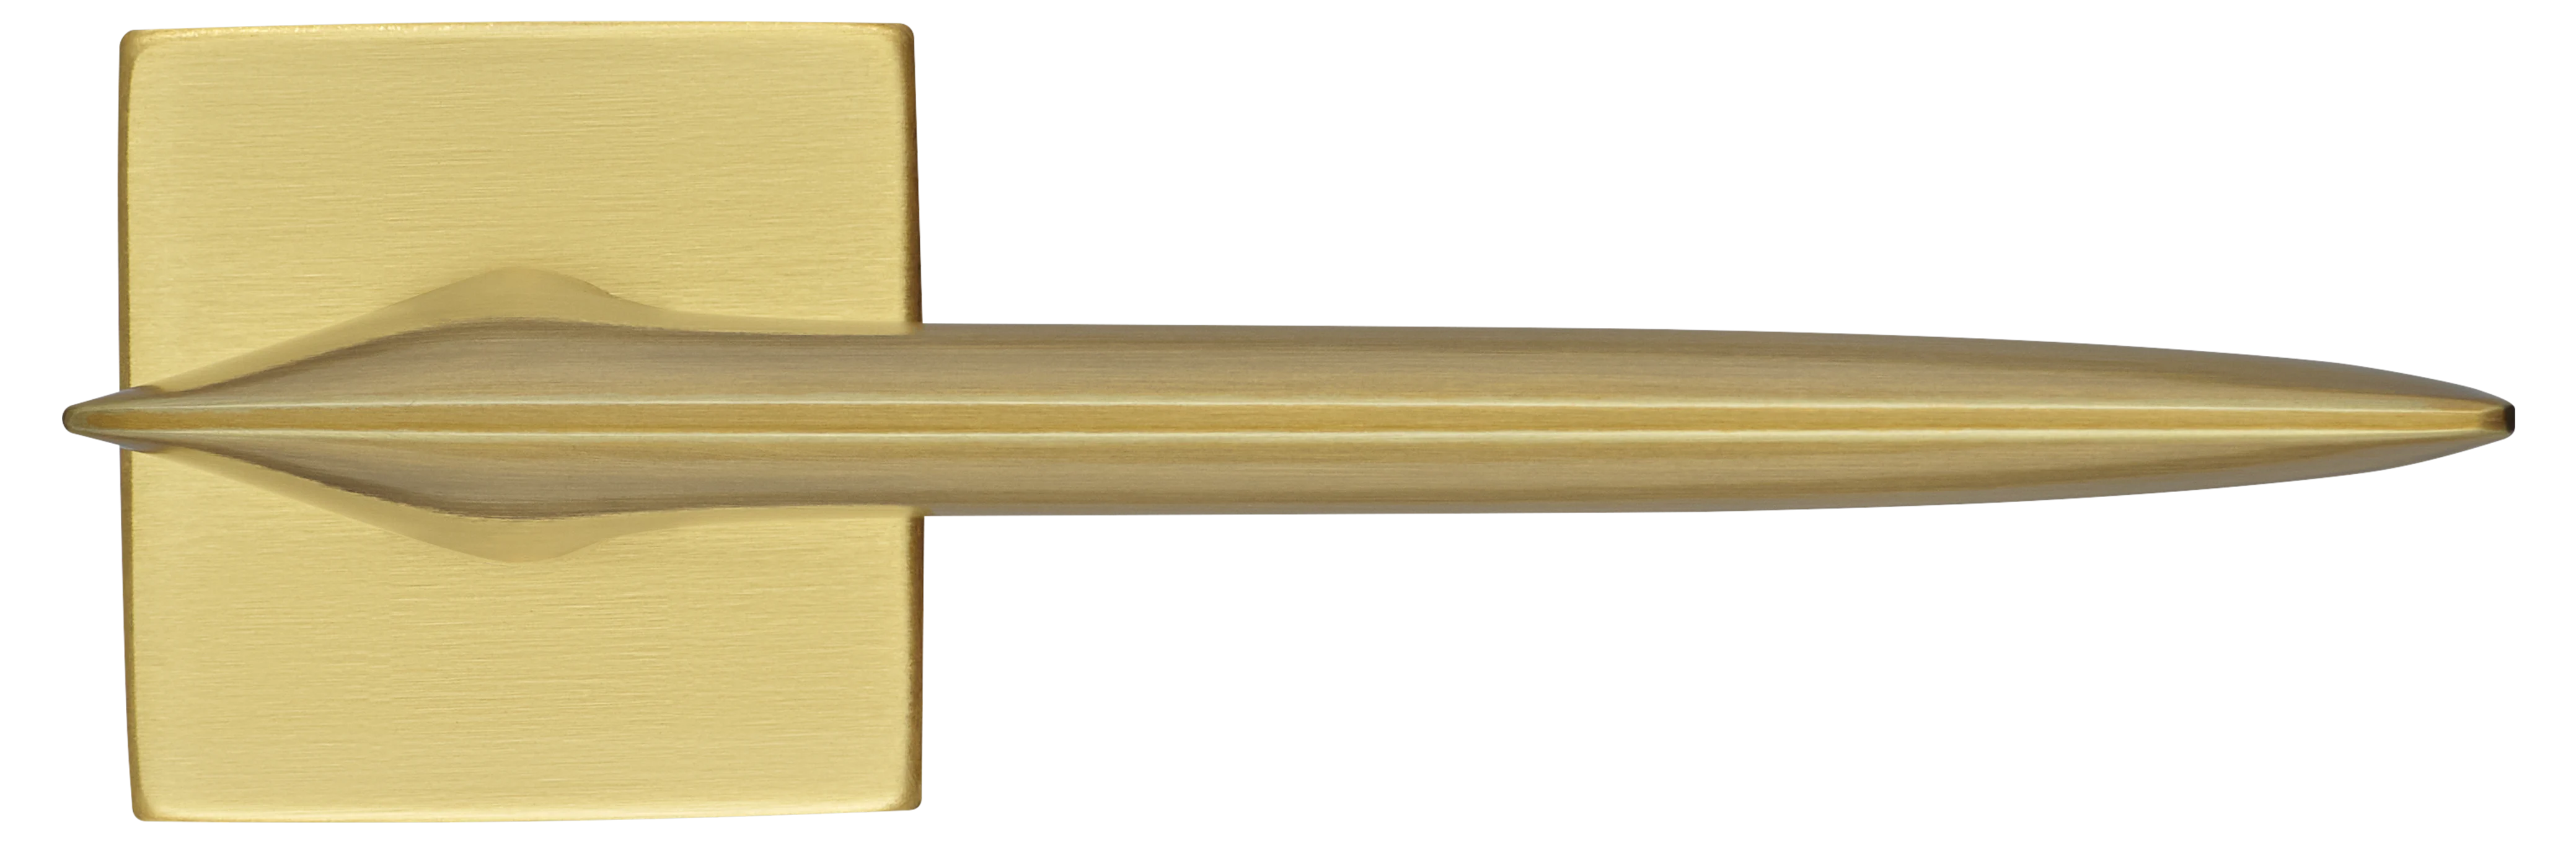 GALACTIC S5 OSA, ручка дверная, цвет -  матовое золото фото купить в Омске